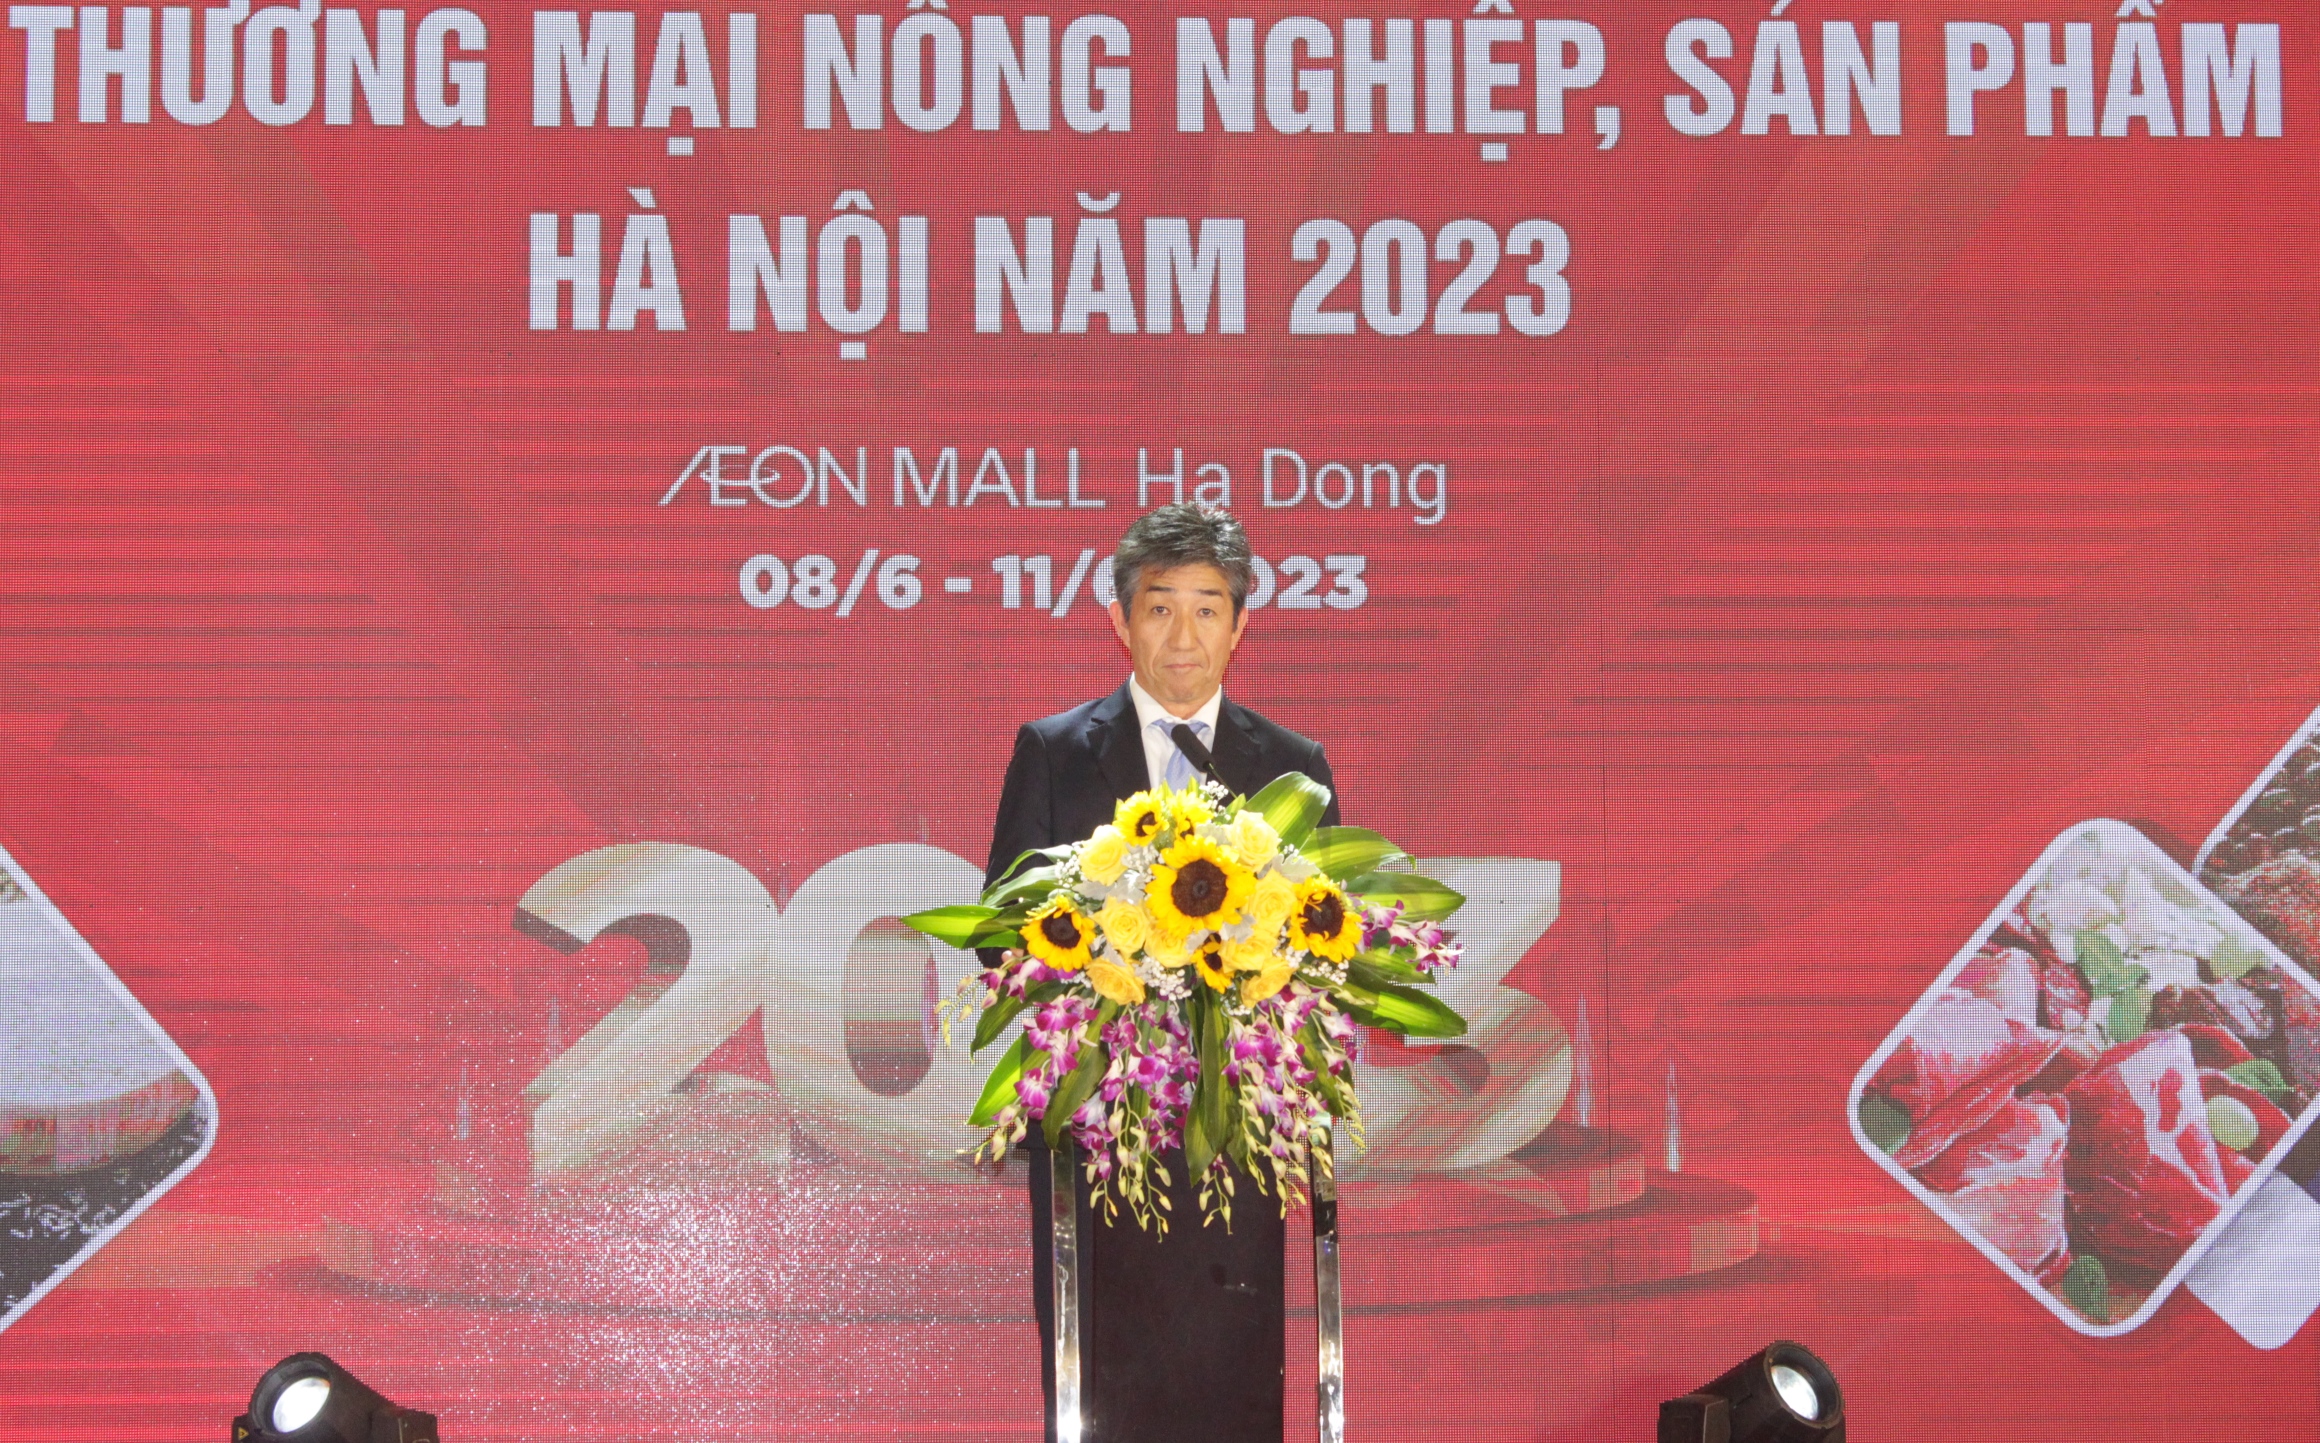 Tổng Giảm đốc Công ty TNHH AEON MALL Việt Nam Tetsuyuki Nakagawa phát biểu chào mừng